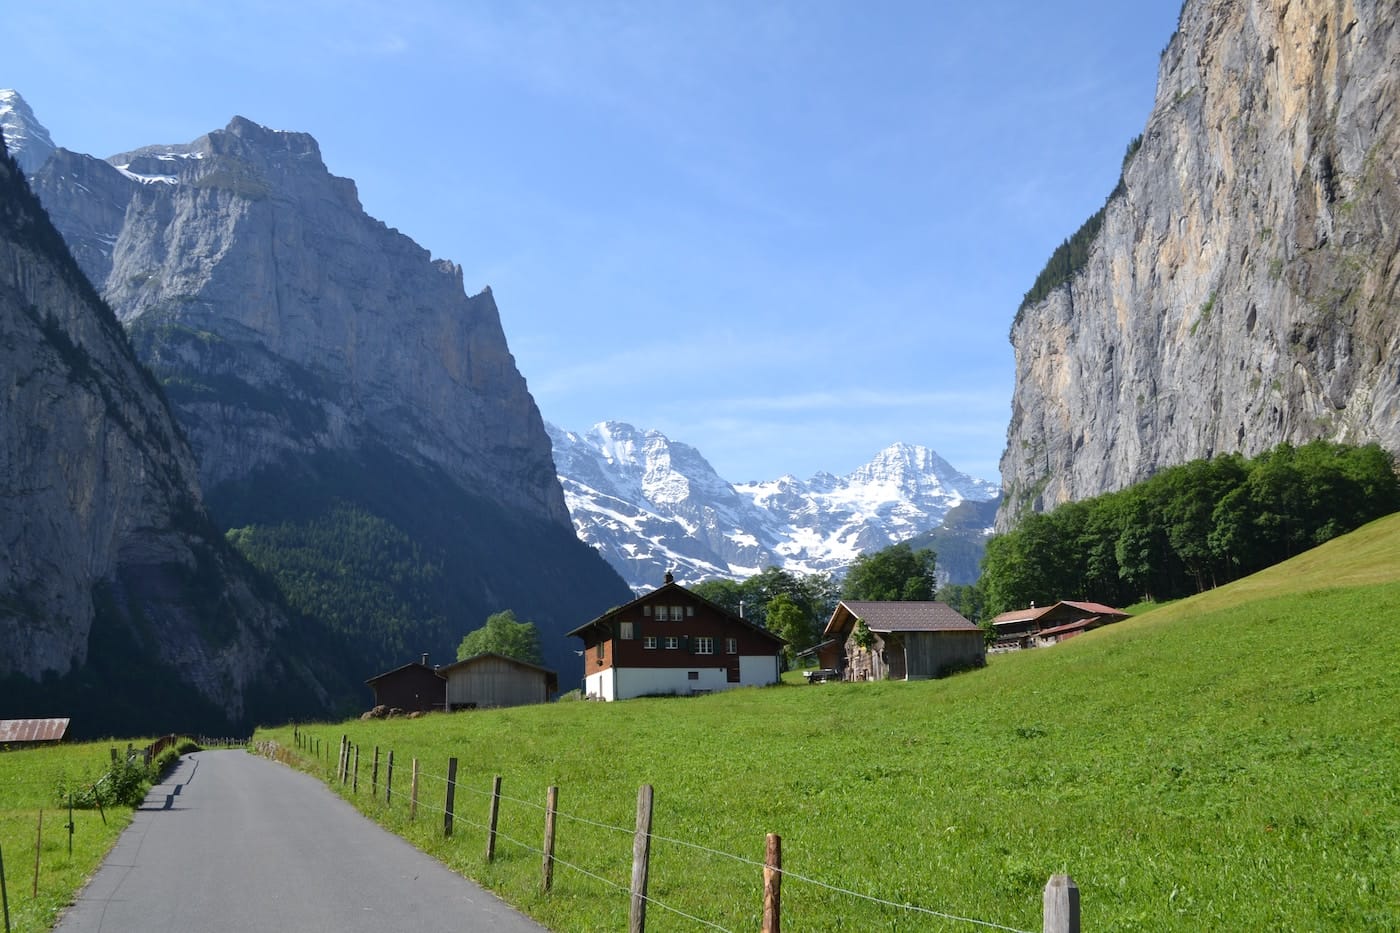 Gratis doen in Zwitserland: maak een wandeling door de Lauterbrunnen Vallei